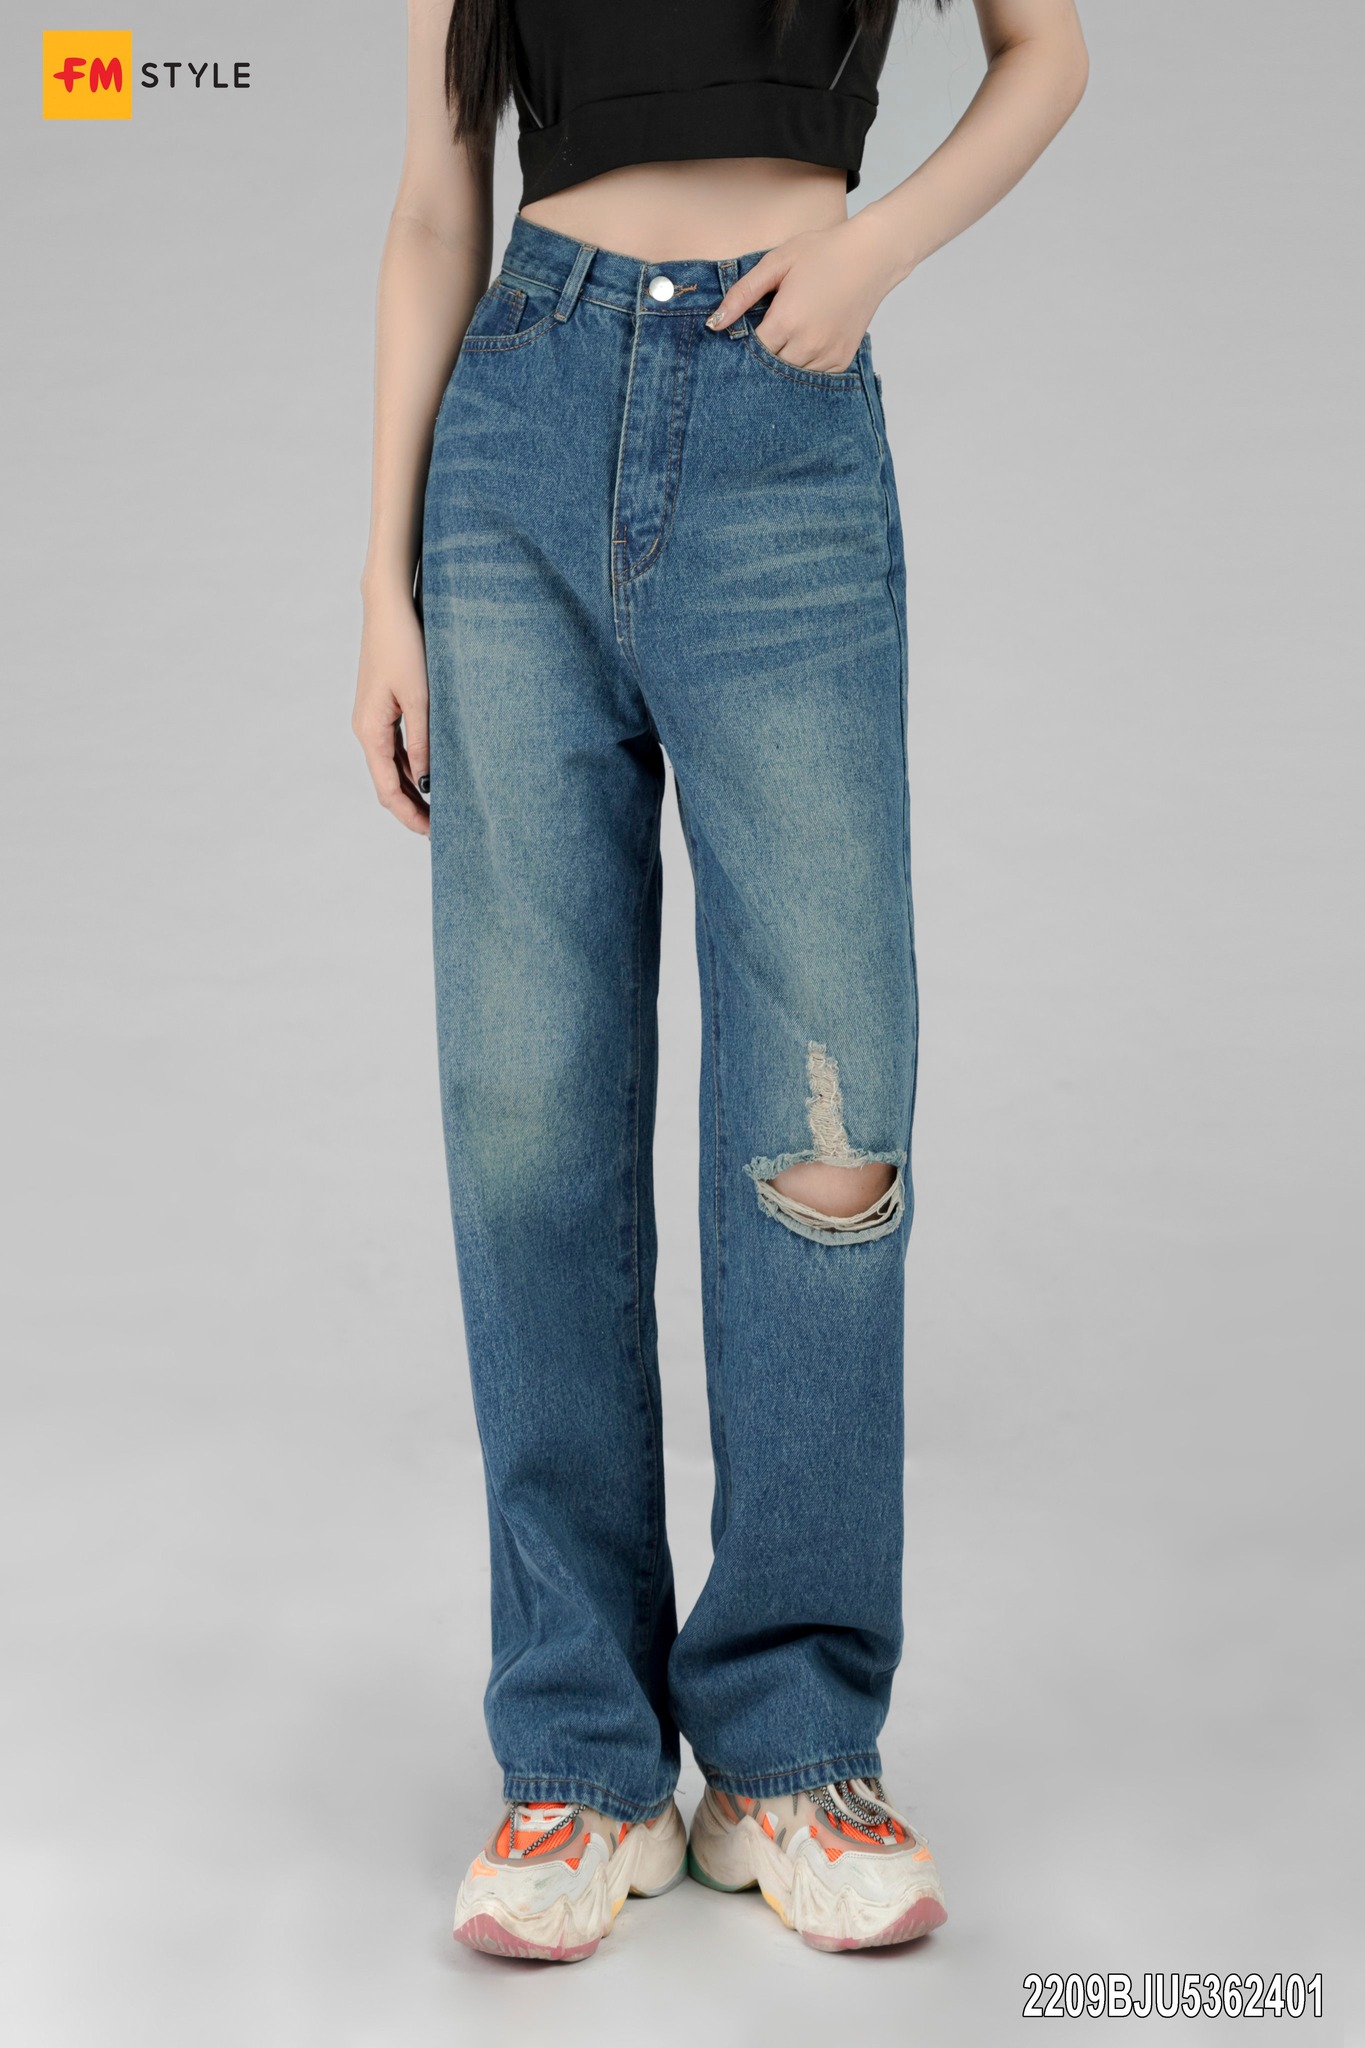 Quần jeans boyfriend có phần ống rộng hơn những kiểu quần thông thường